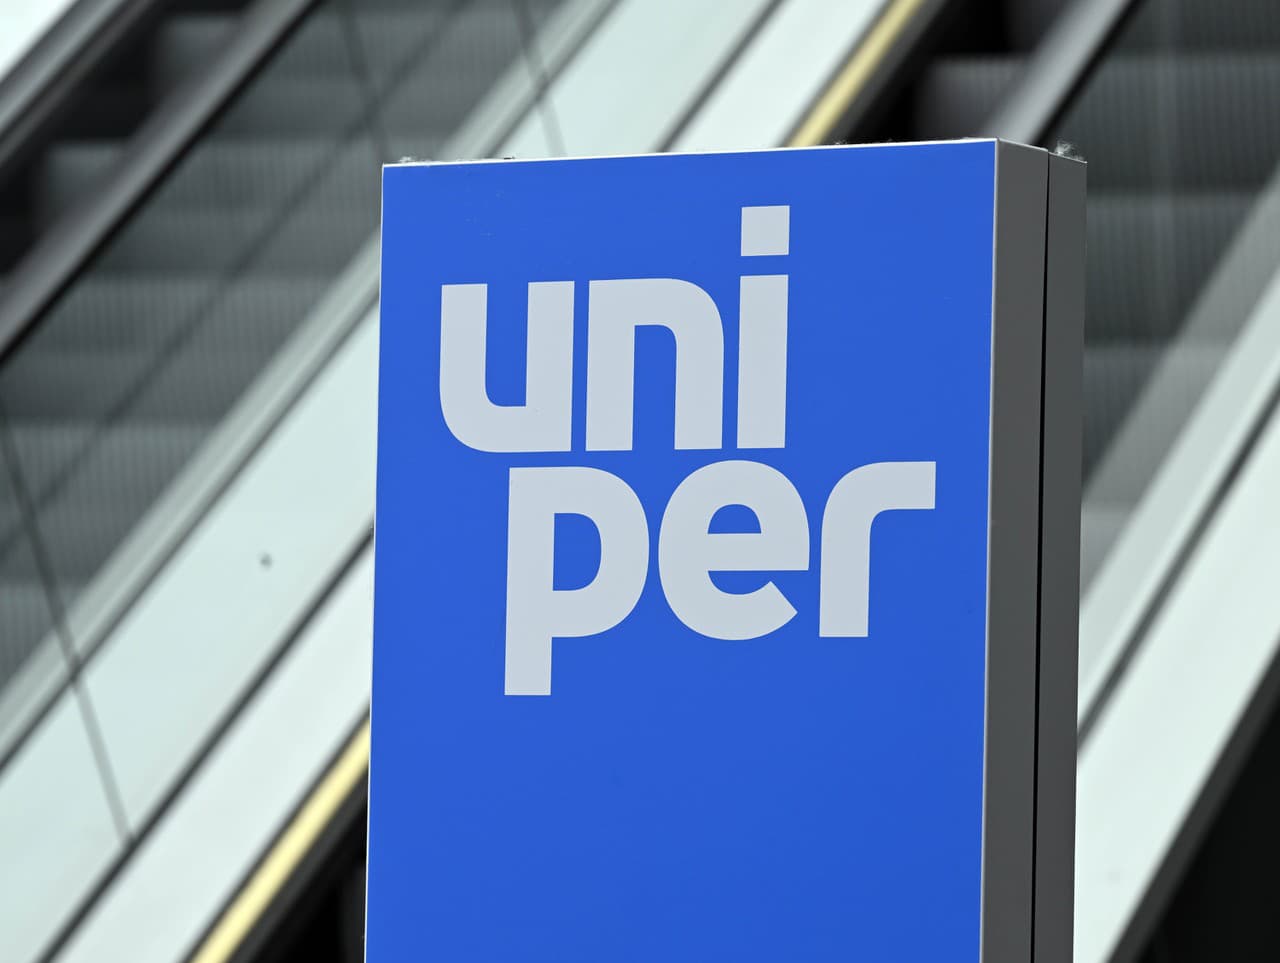 Nemecká vláda poskytne Uniperu 8 miliárd eur prostredníctvom zvýšenia kapitálu